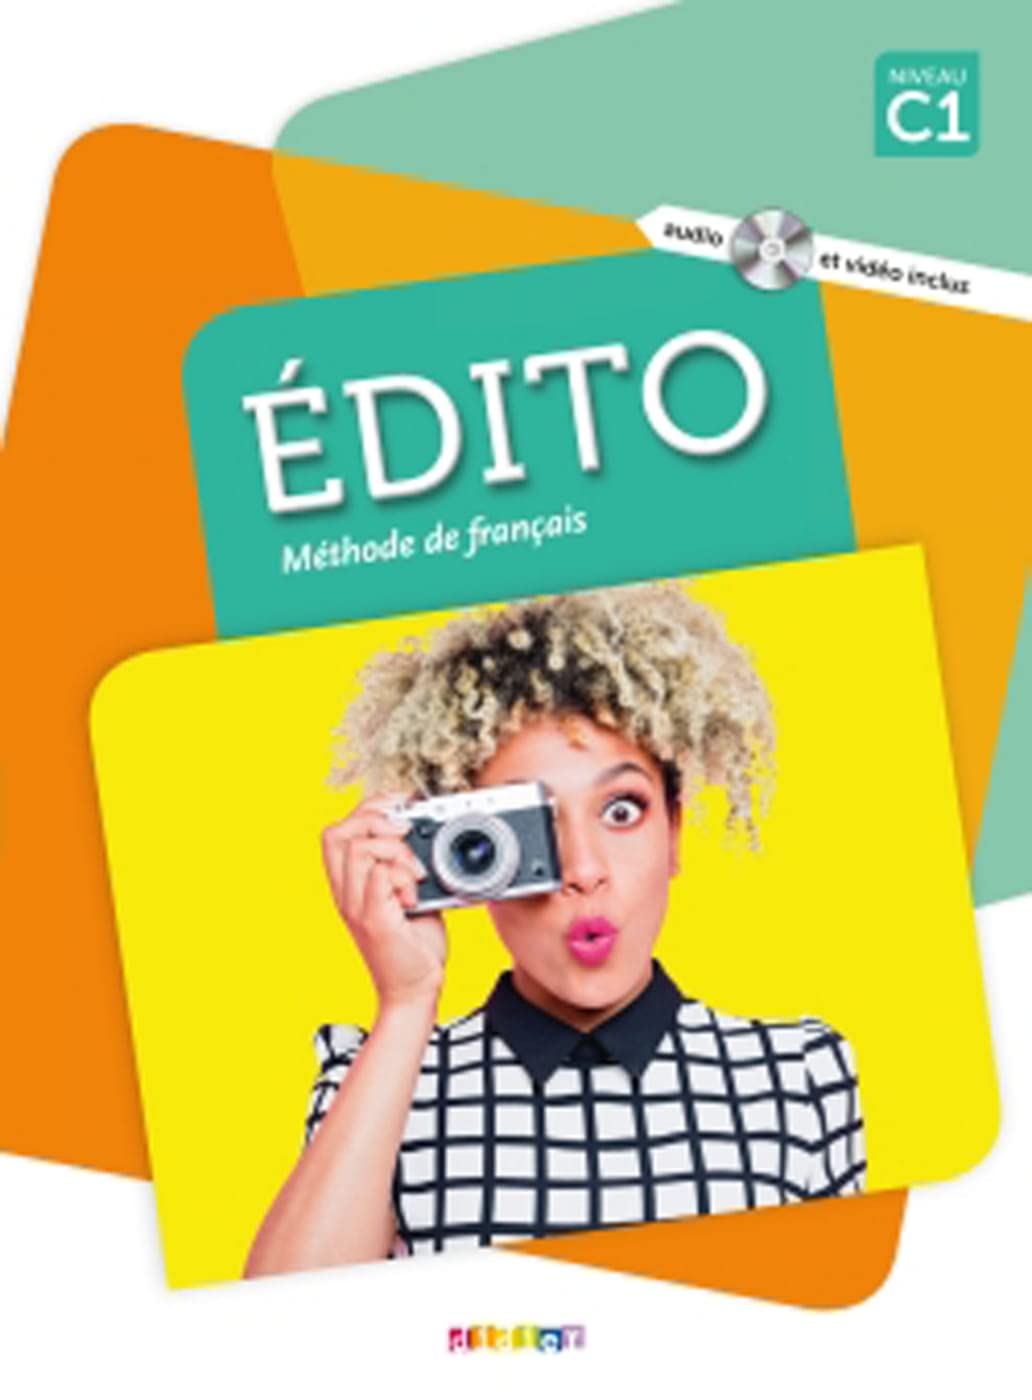 法语教材 |Édito 5 C1 青少年和成人 法语教材 Didier出版社